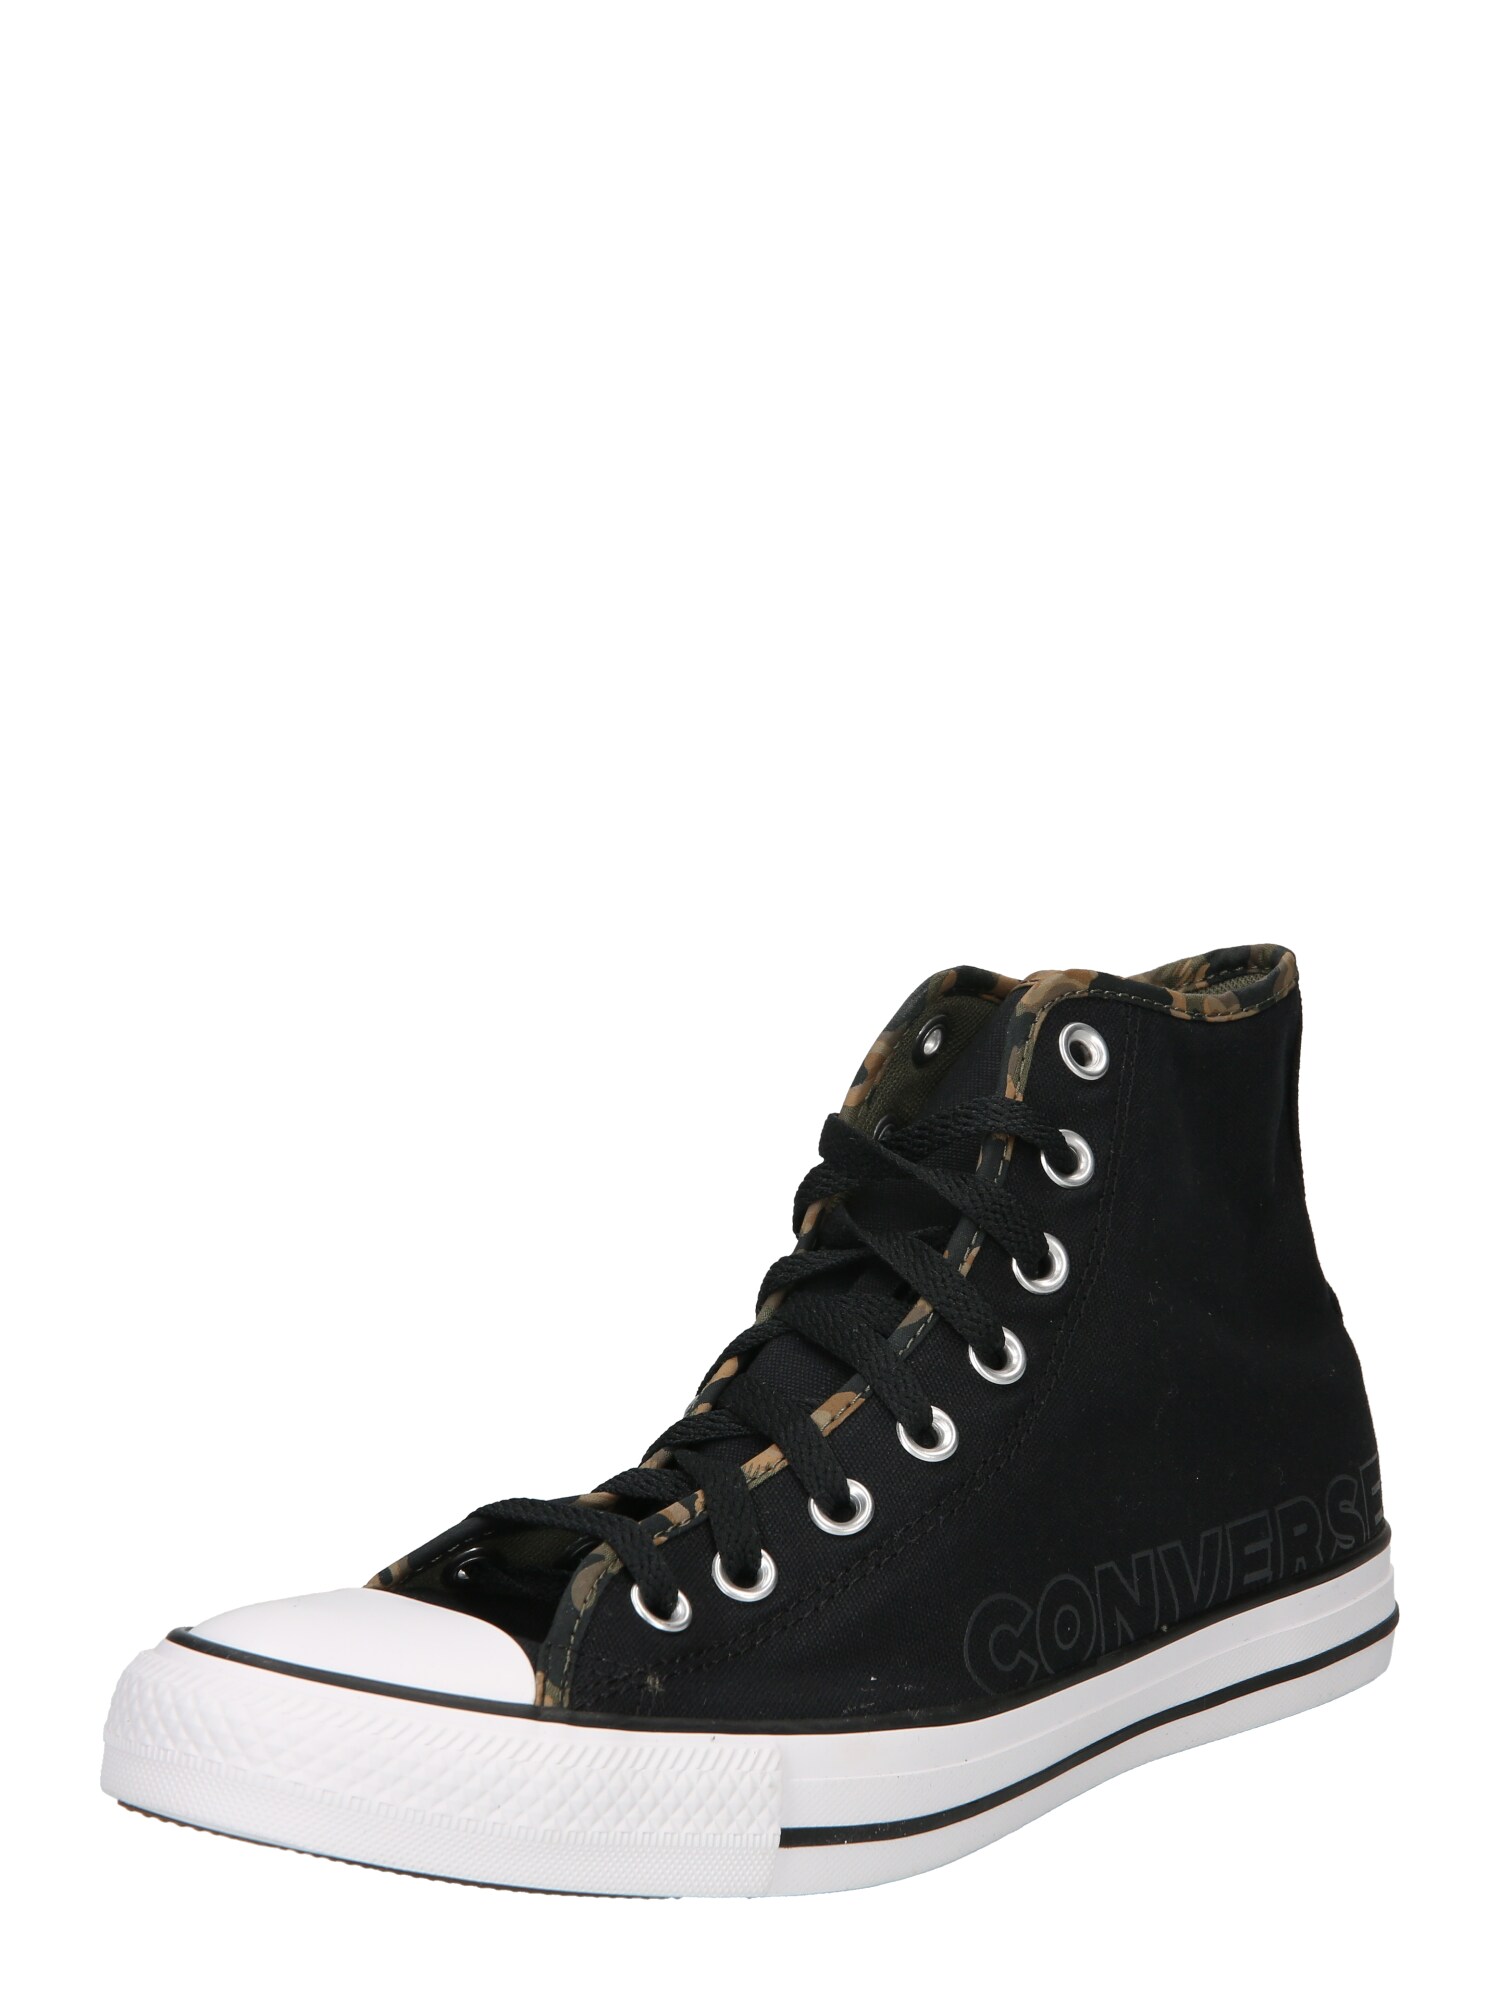 Converse CONVERSE Sneaker 'Chuck Taylor All Star' hellbraun / oliv / schwarz / silber